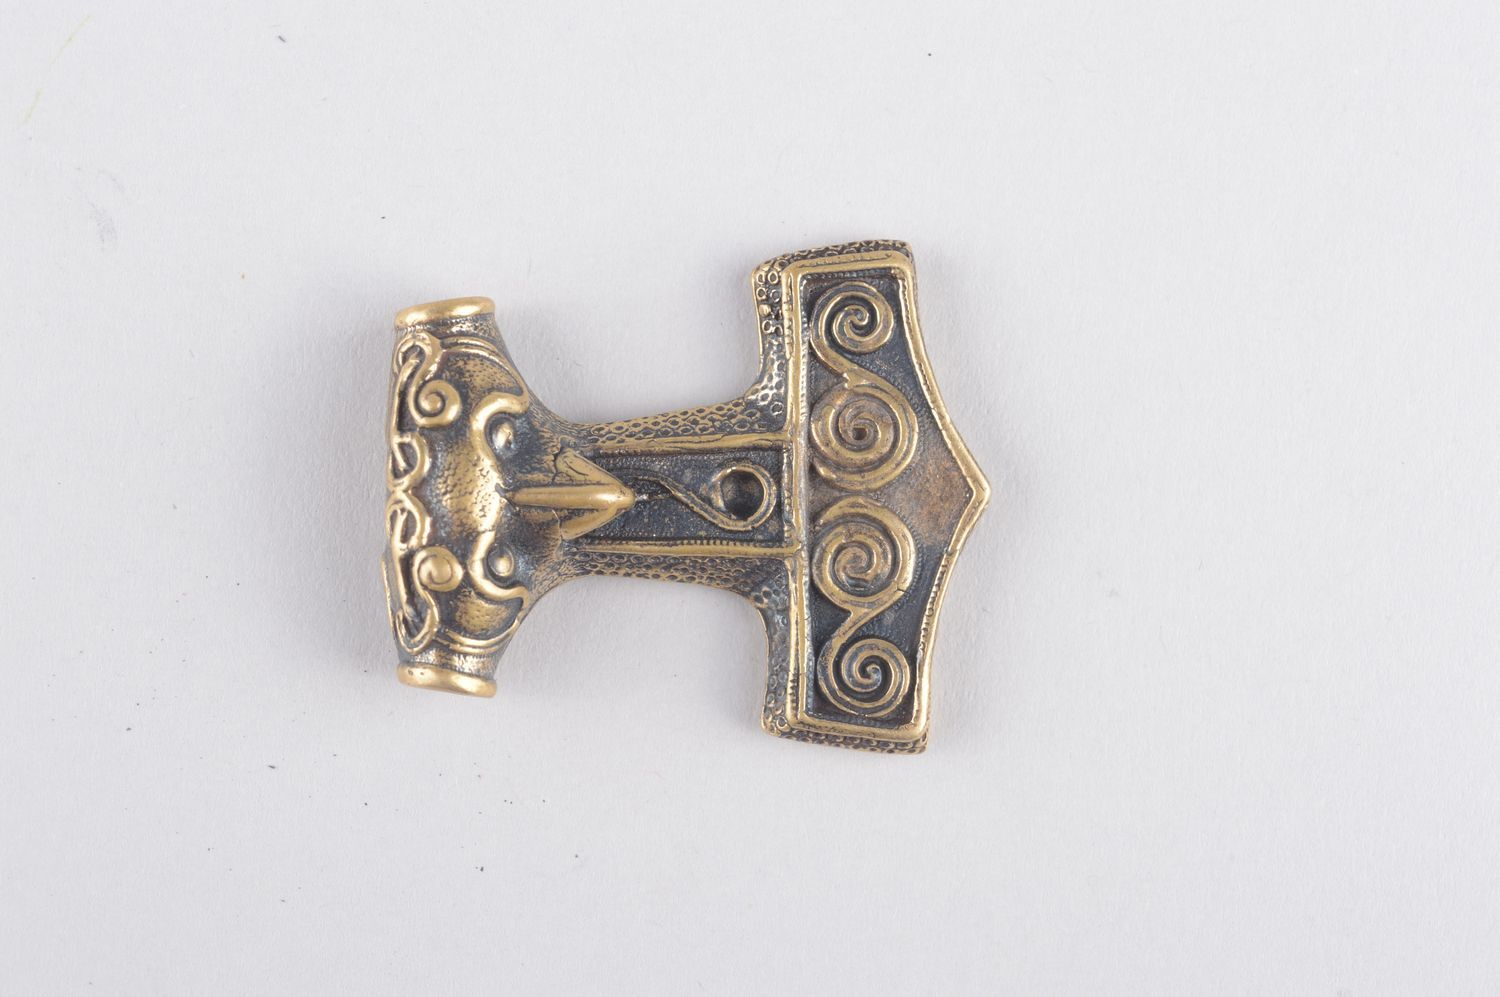 Bronze pendant handmade bronze jewelry metal pendant on cord ethnic jewelry photo 2